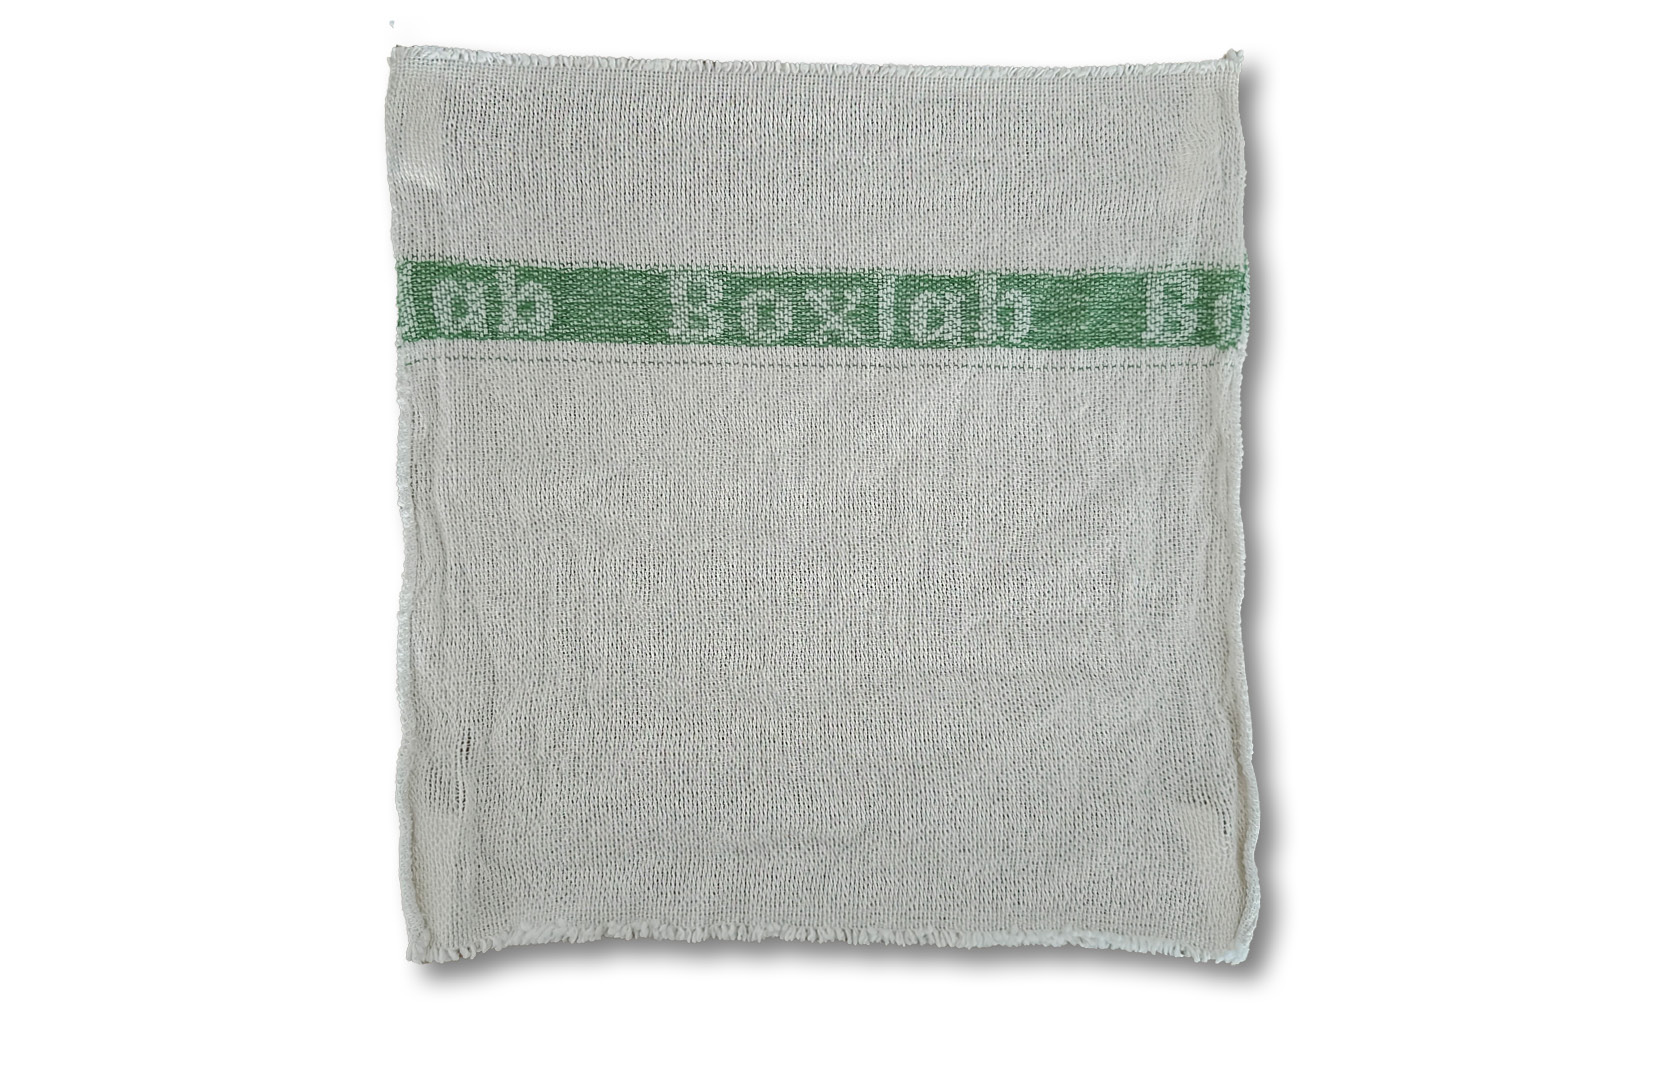 BOXLAB Maschinenputztuch, weiß, grün, 400x400mm